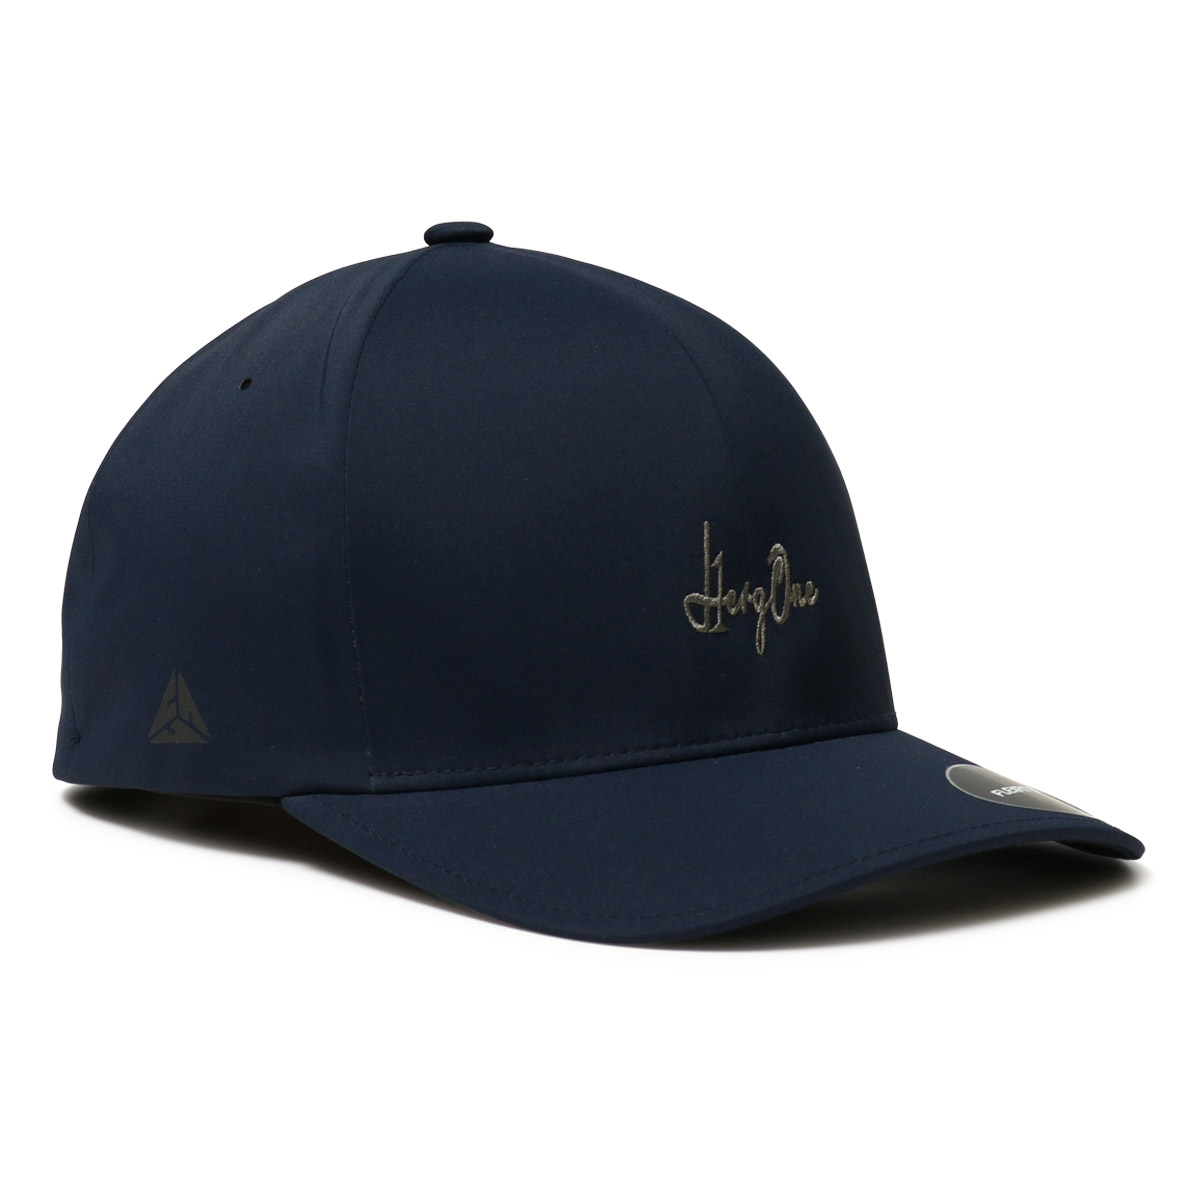 エルグワン ゴルフ キャップ 帽子 メンズ AU225103 HERG1 スポーツ サイズ調節可能 ...